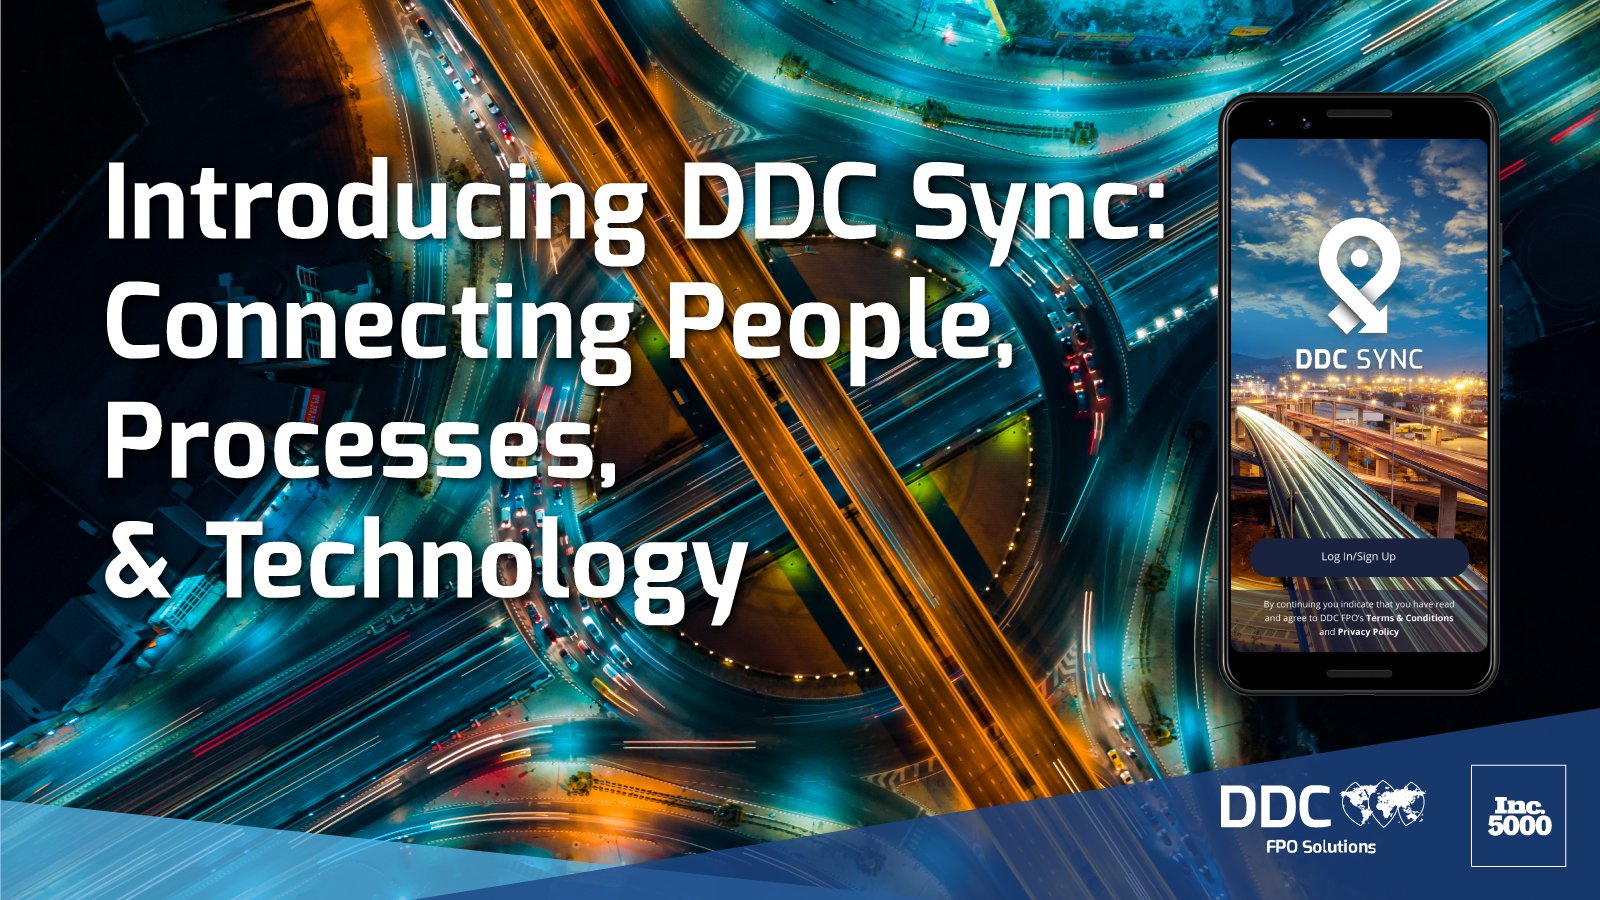 Introducing-DDC-Sync